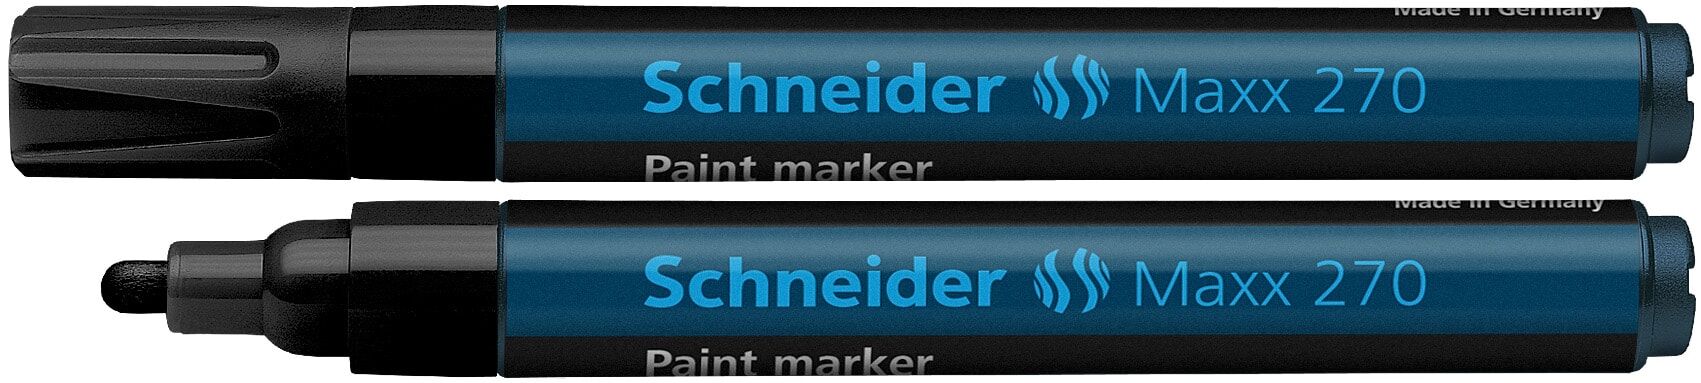 Schneider Electric Schneider Märkpenna Vit Schneider Paintmarker Maxx 270